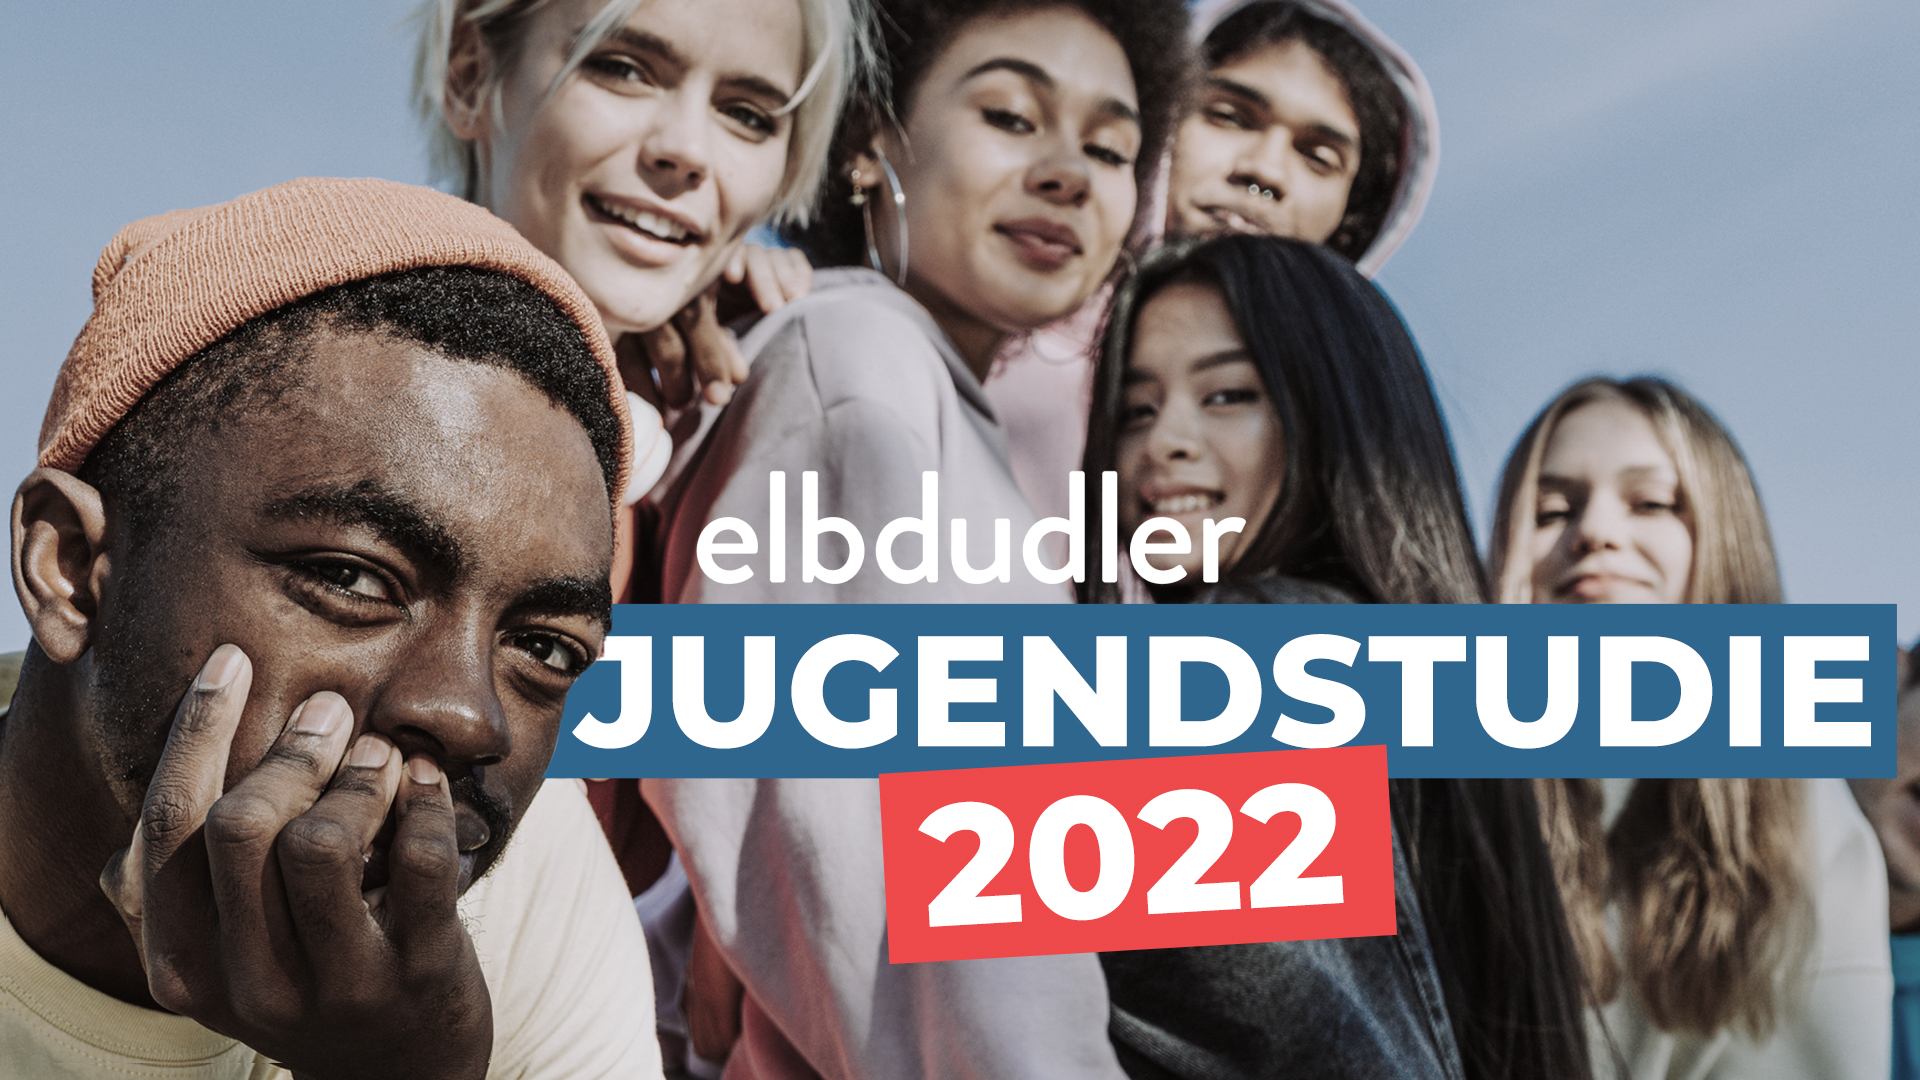 elbdudler Jugendstudie 2022